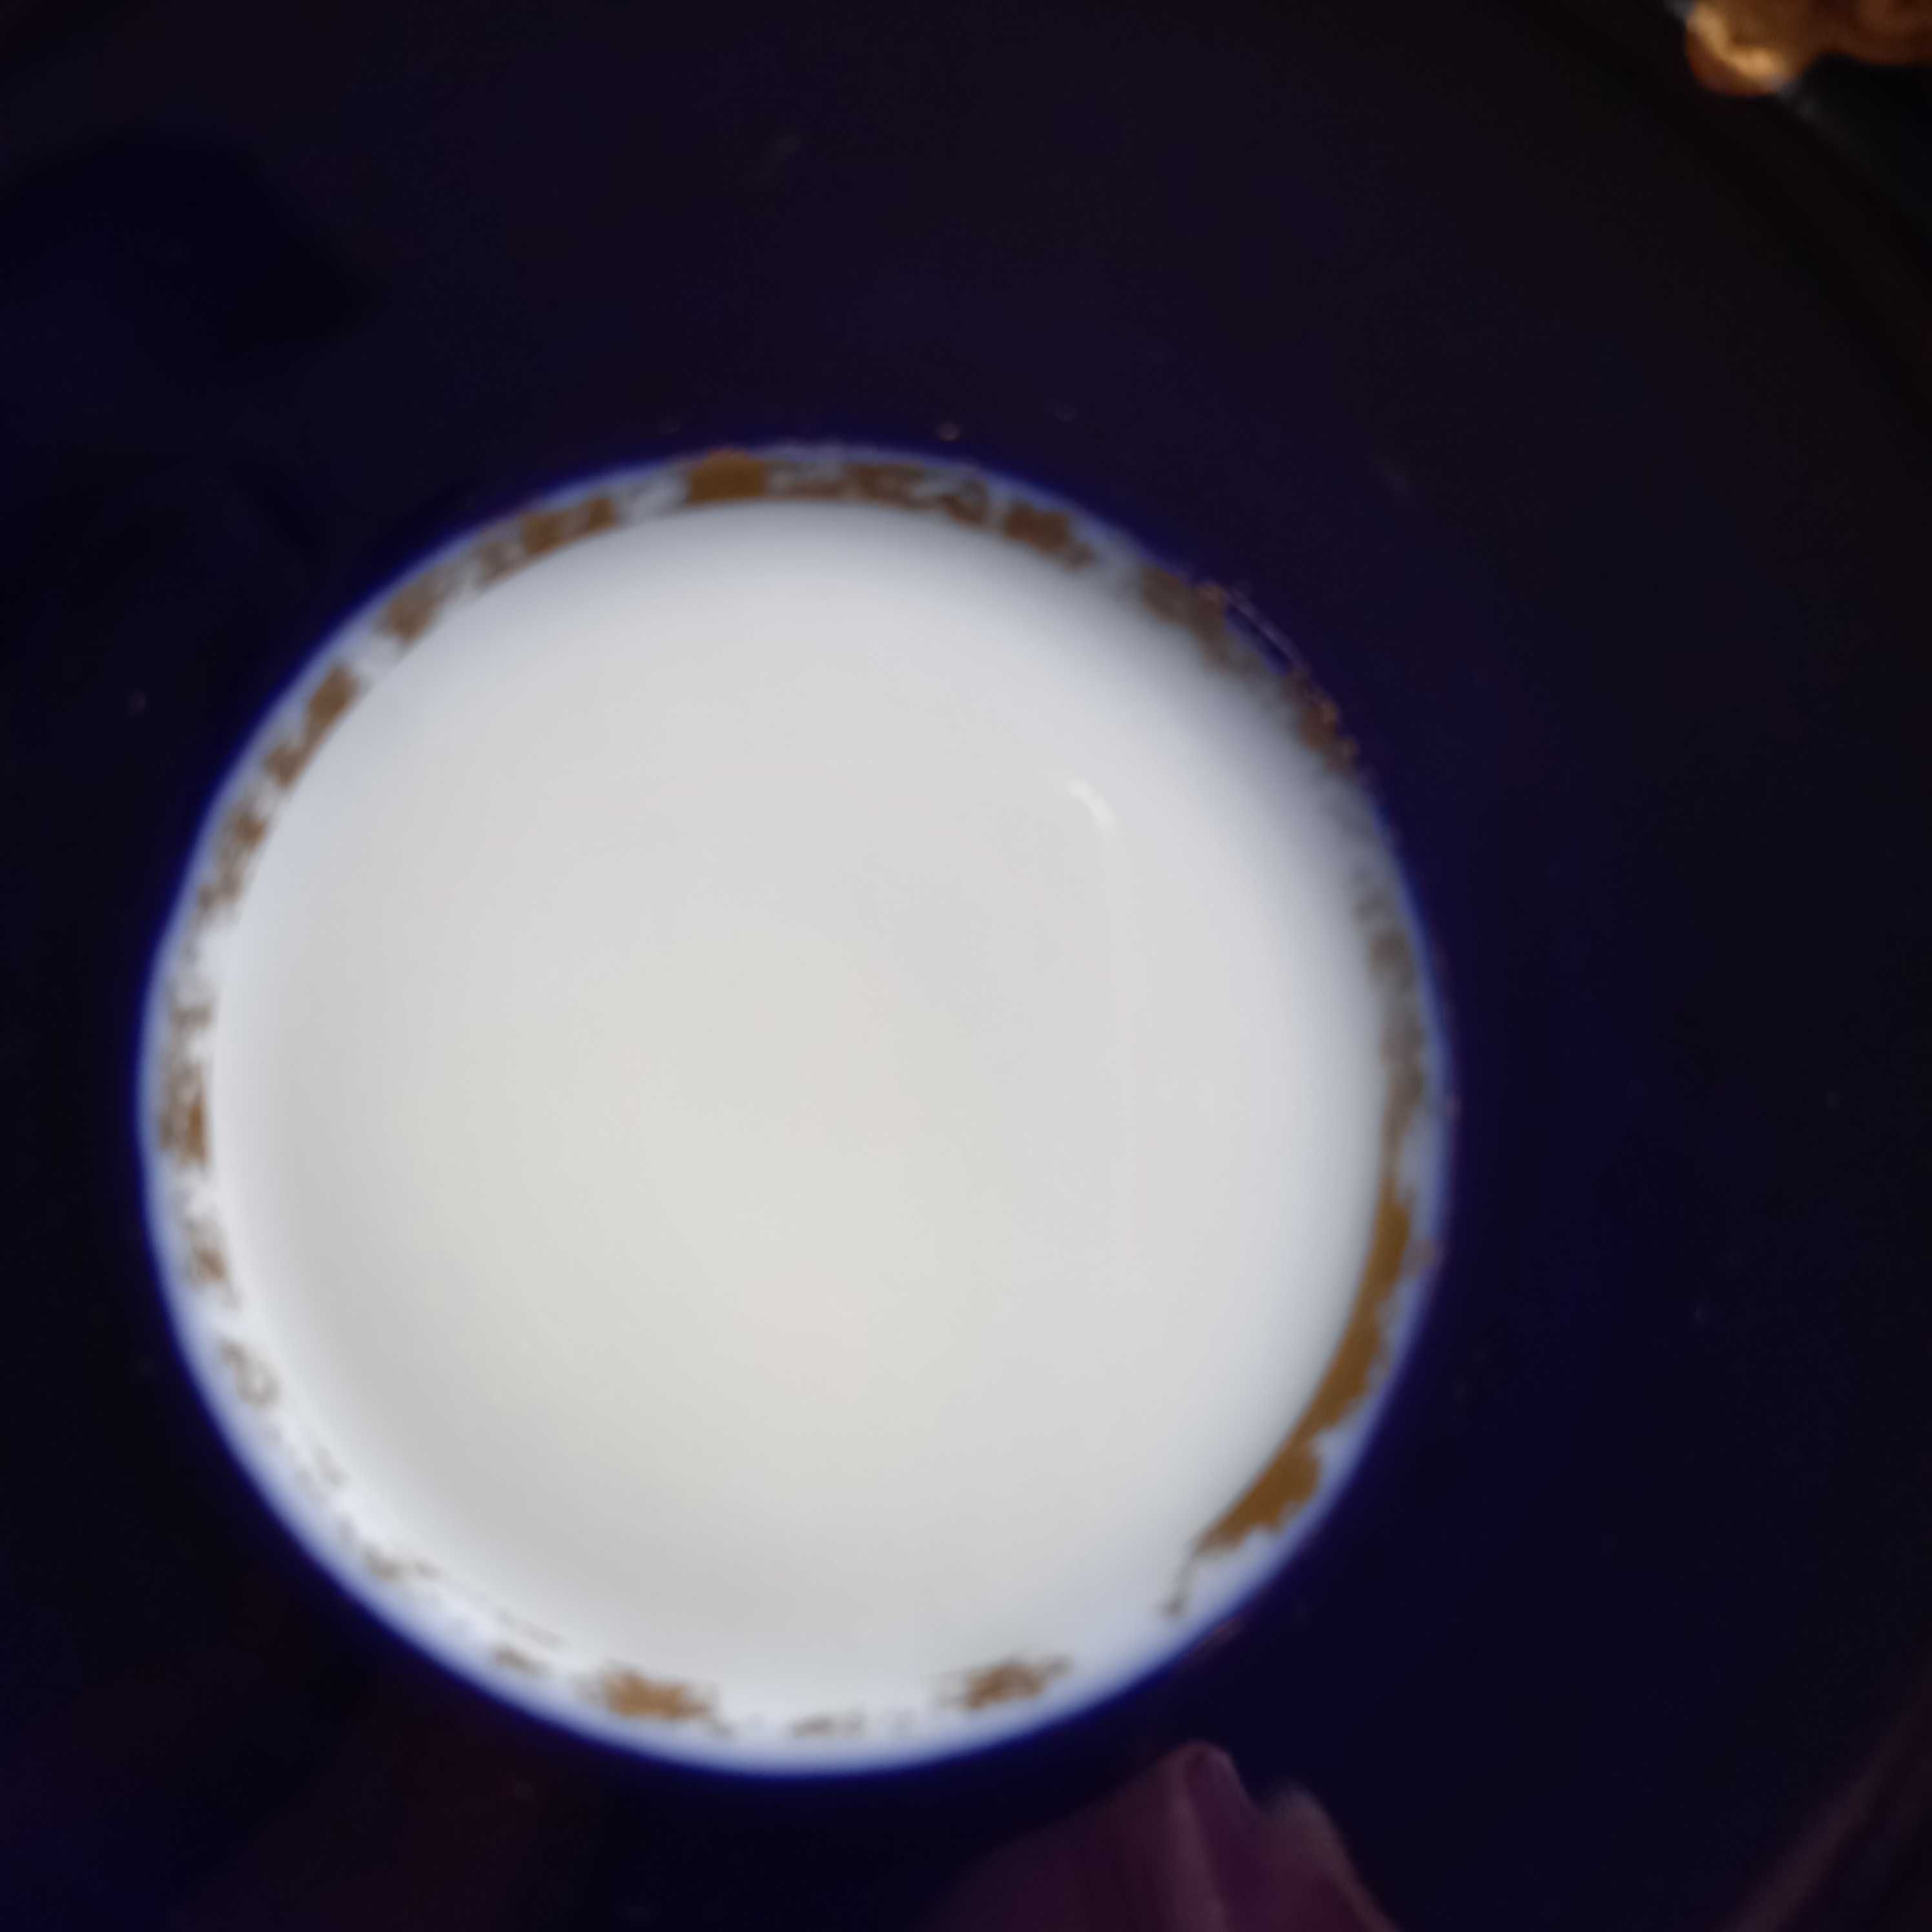 Baensch Lettin filiżanka porcelana kobalt zestaw śniadaniowy